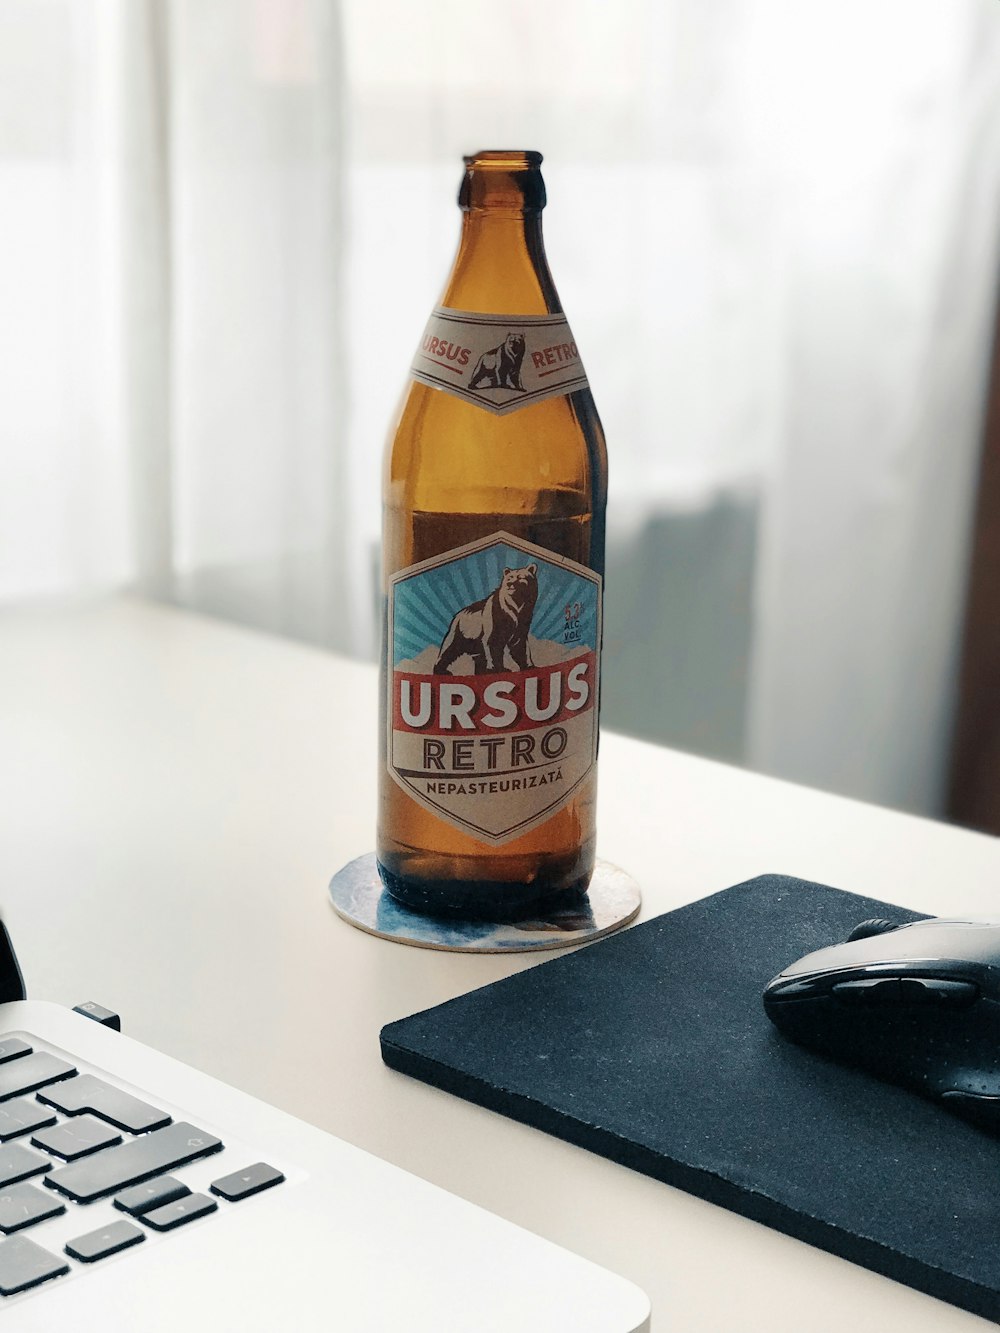 Ursus Retro bottle